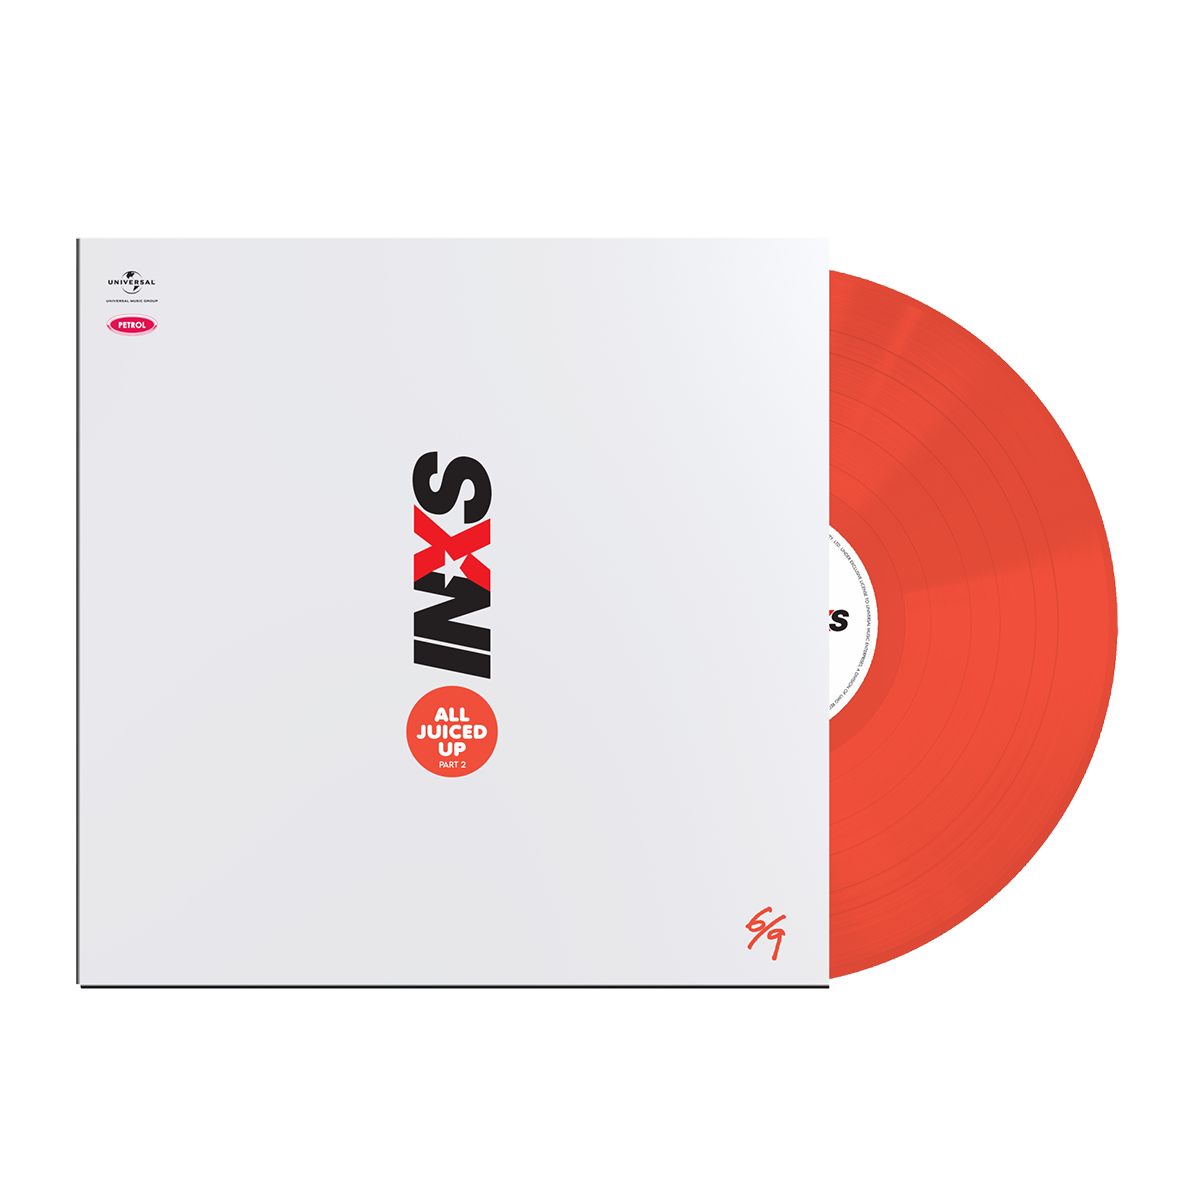 INXS - All Juiced Up Part 2 – Vol. 6: Exclusive Colour Vinyl LP